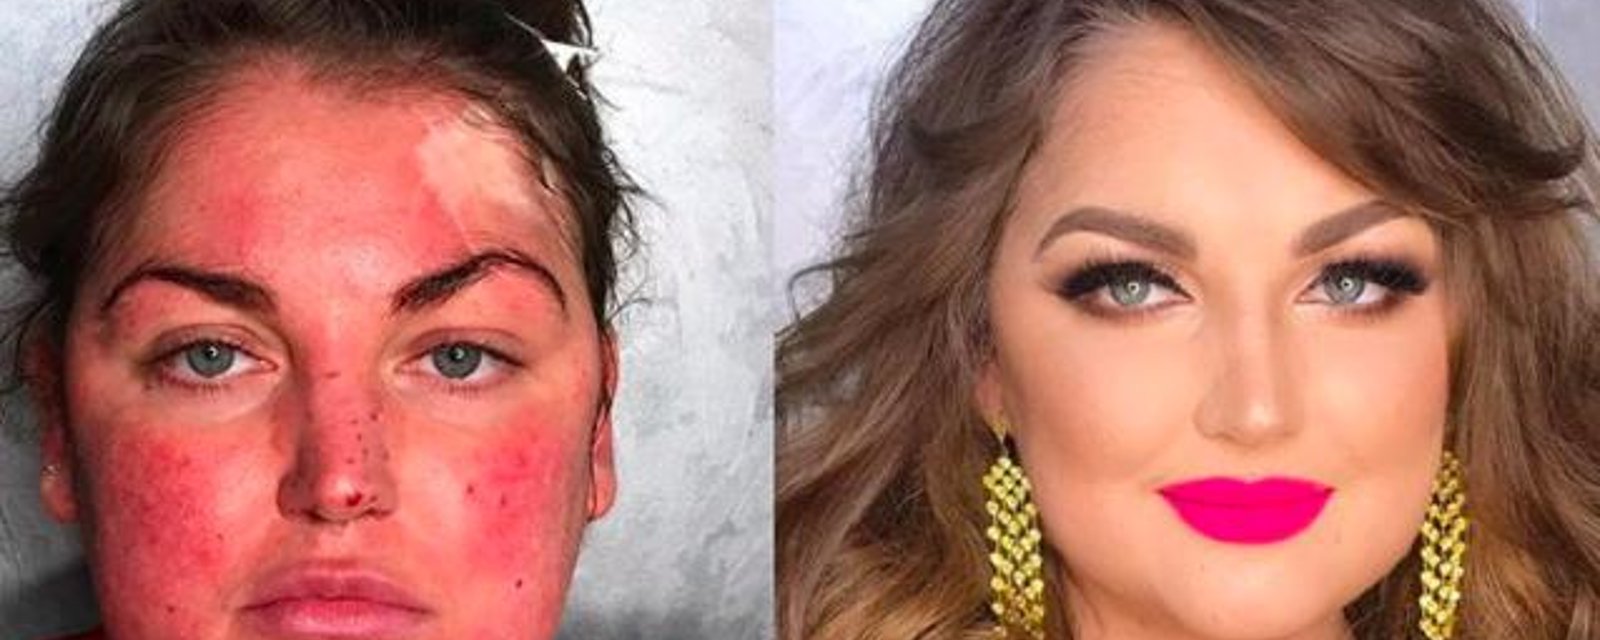 16 photos qui nous montrent que le maquillage peut complètement changer votre visage 